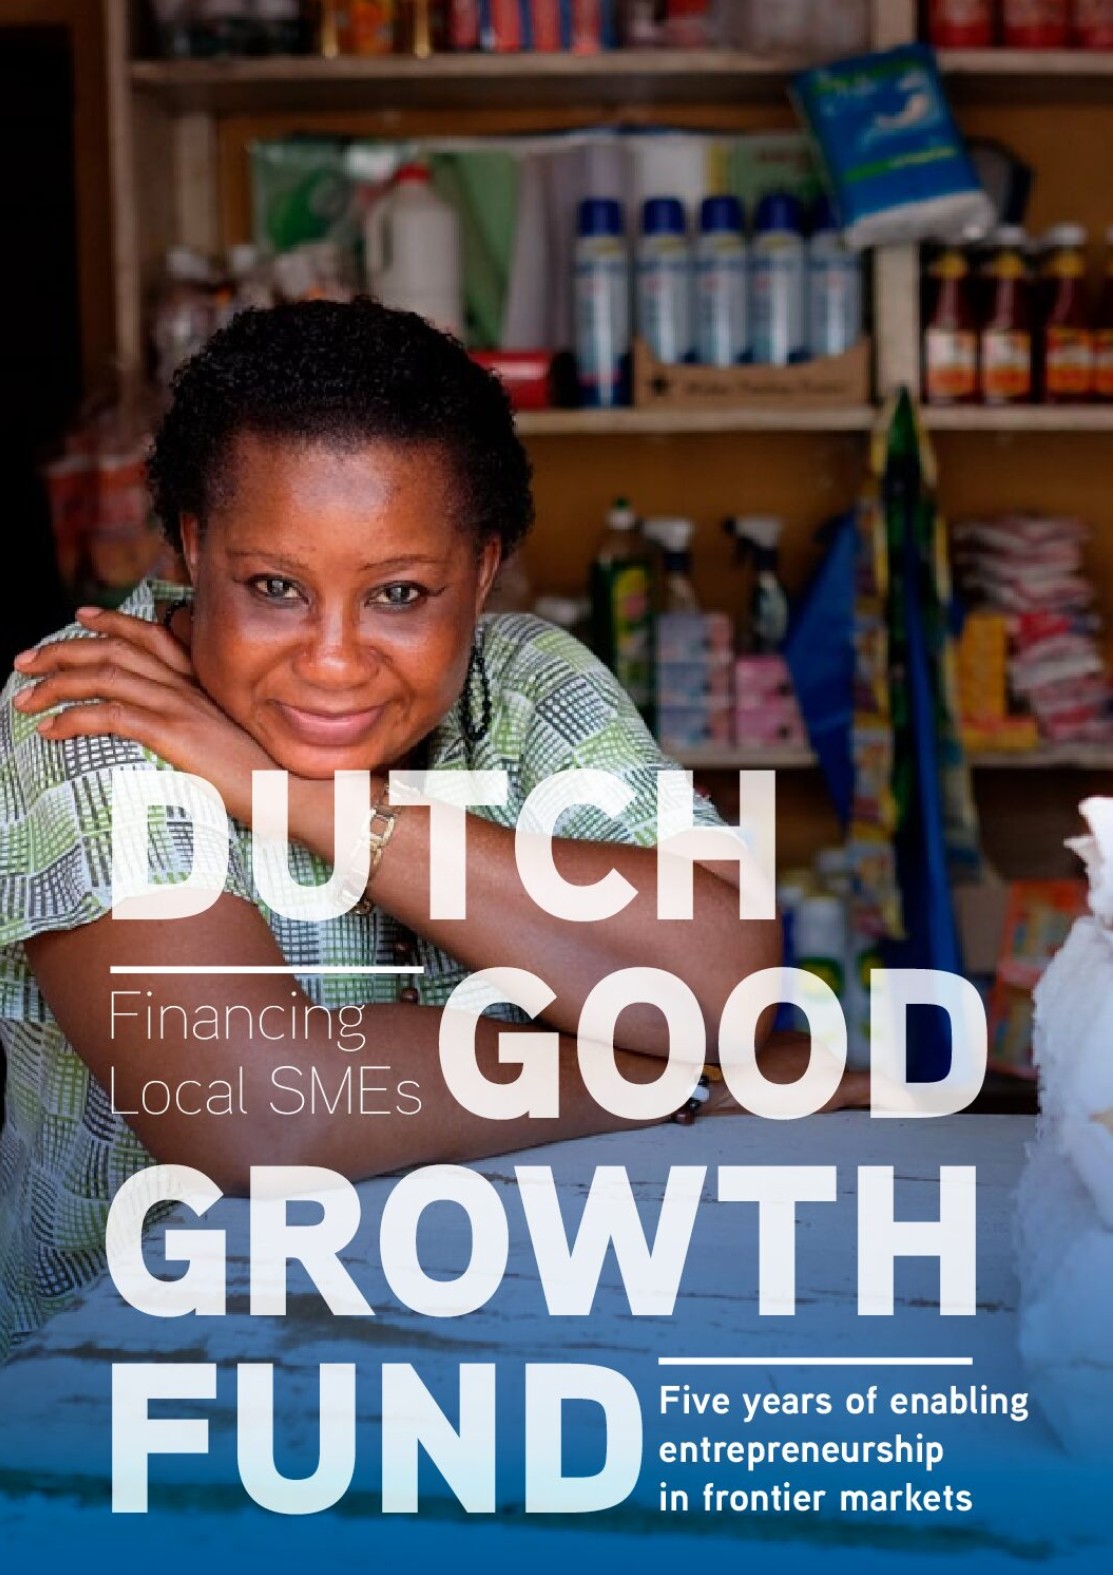 Dutch Good Growth Fund pdf - Iungo capital downloads